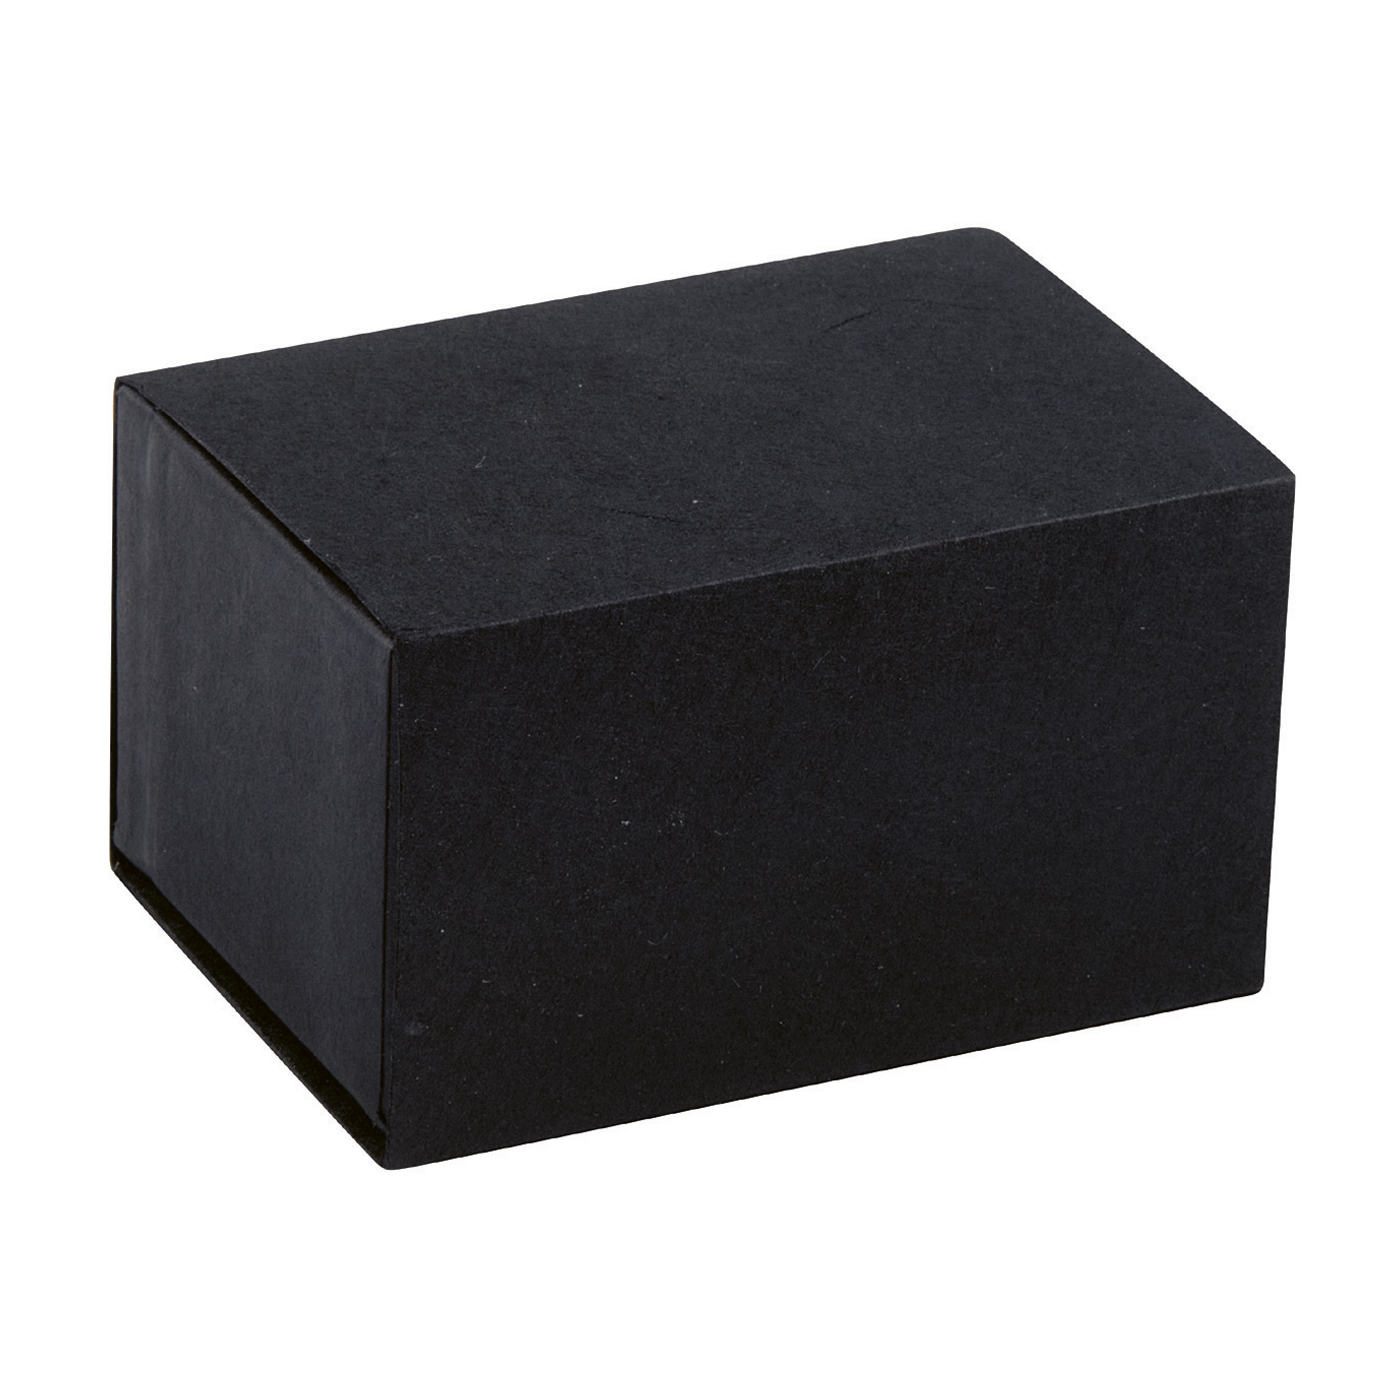 PICA-Design Schmucketui "Quadrabox", schwarz, 65 x 45 x 33 mm - 1 Stück